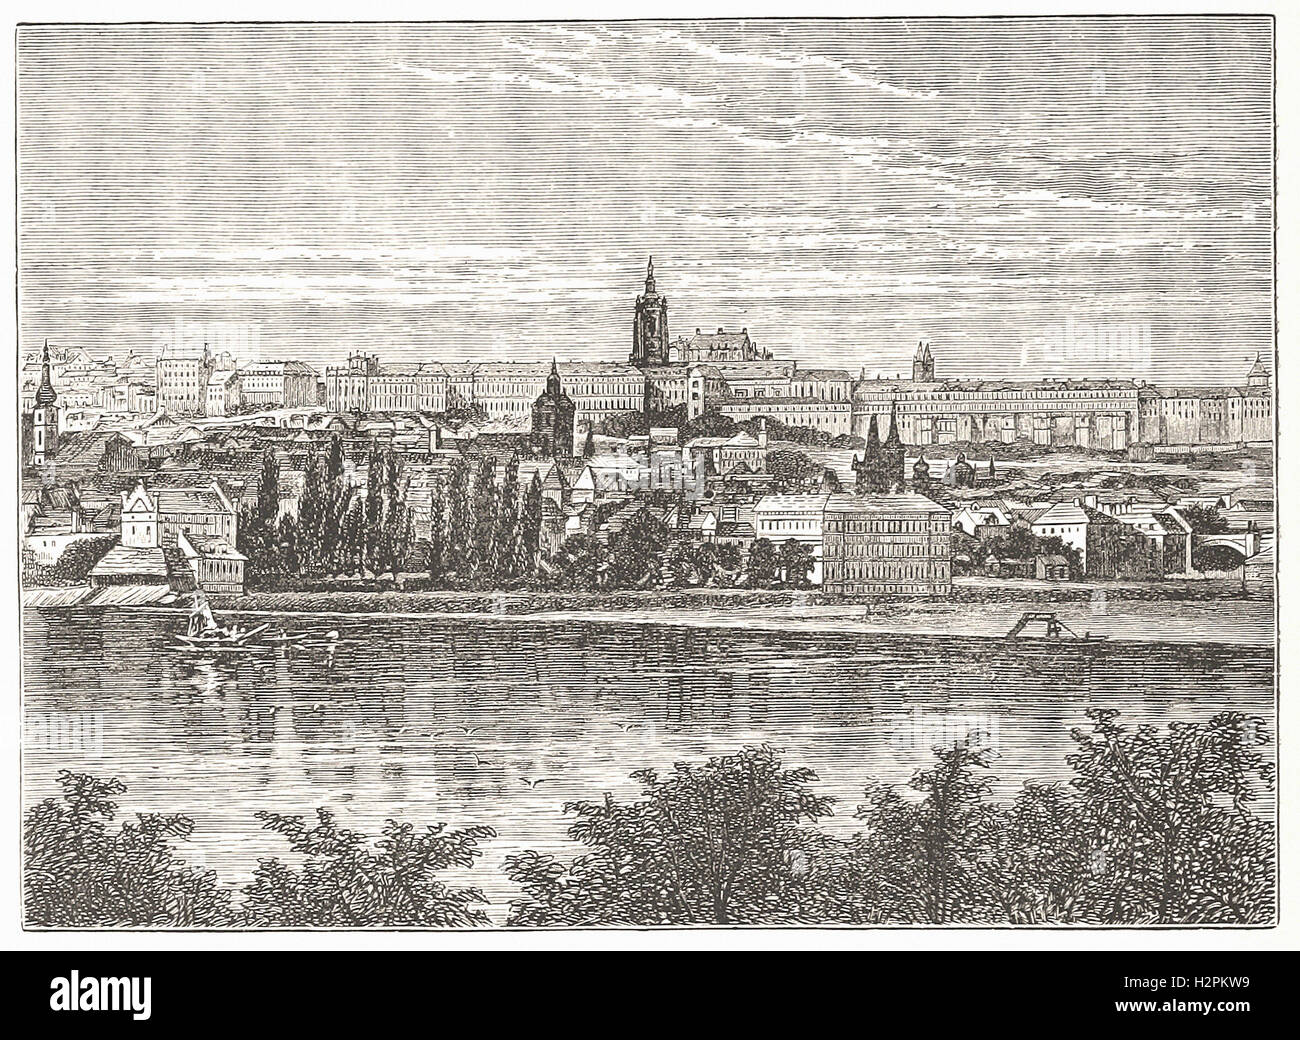 Palacio de los reyes de Bohemia, Y DE LA CATEDRAL DE HRADSCHIN, Praga - desde 'Cassell's ilustra la historia universal' - 1882 Foto de stock